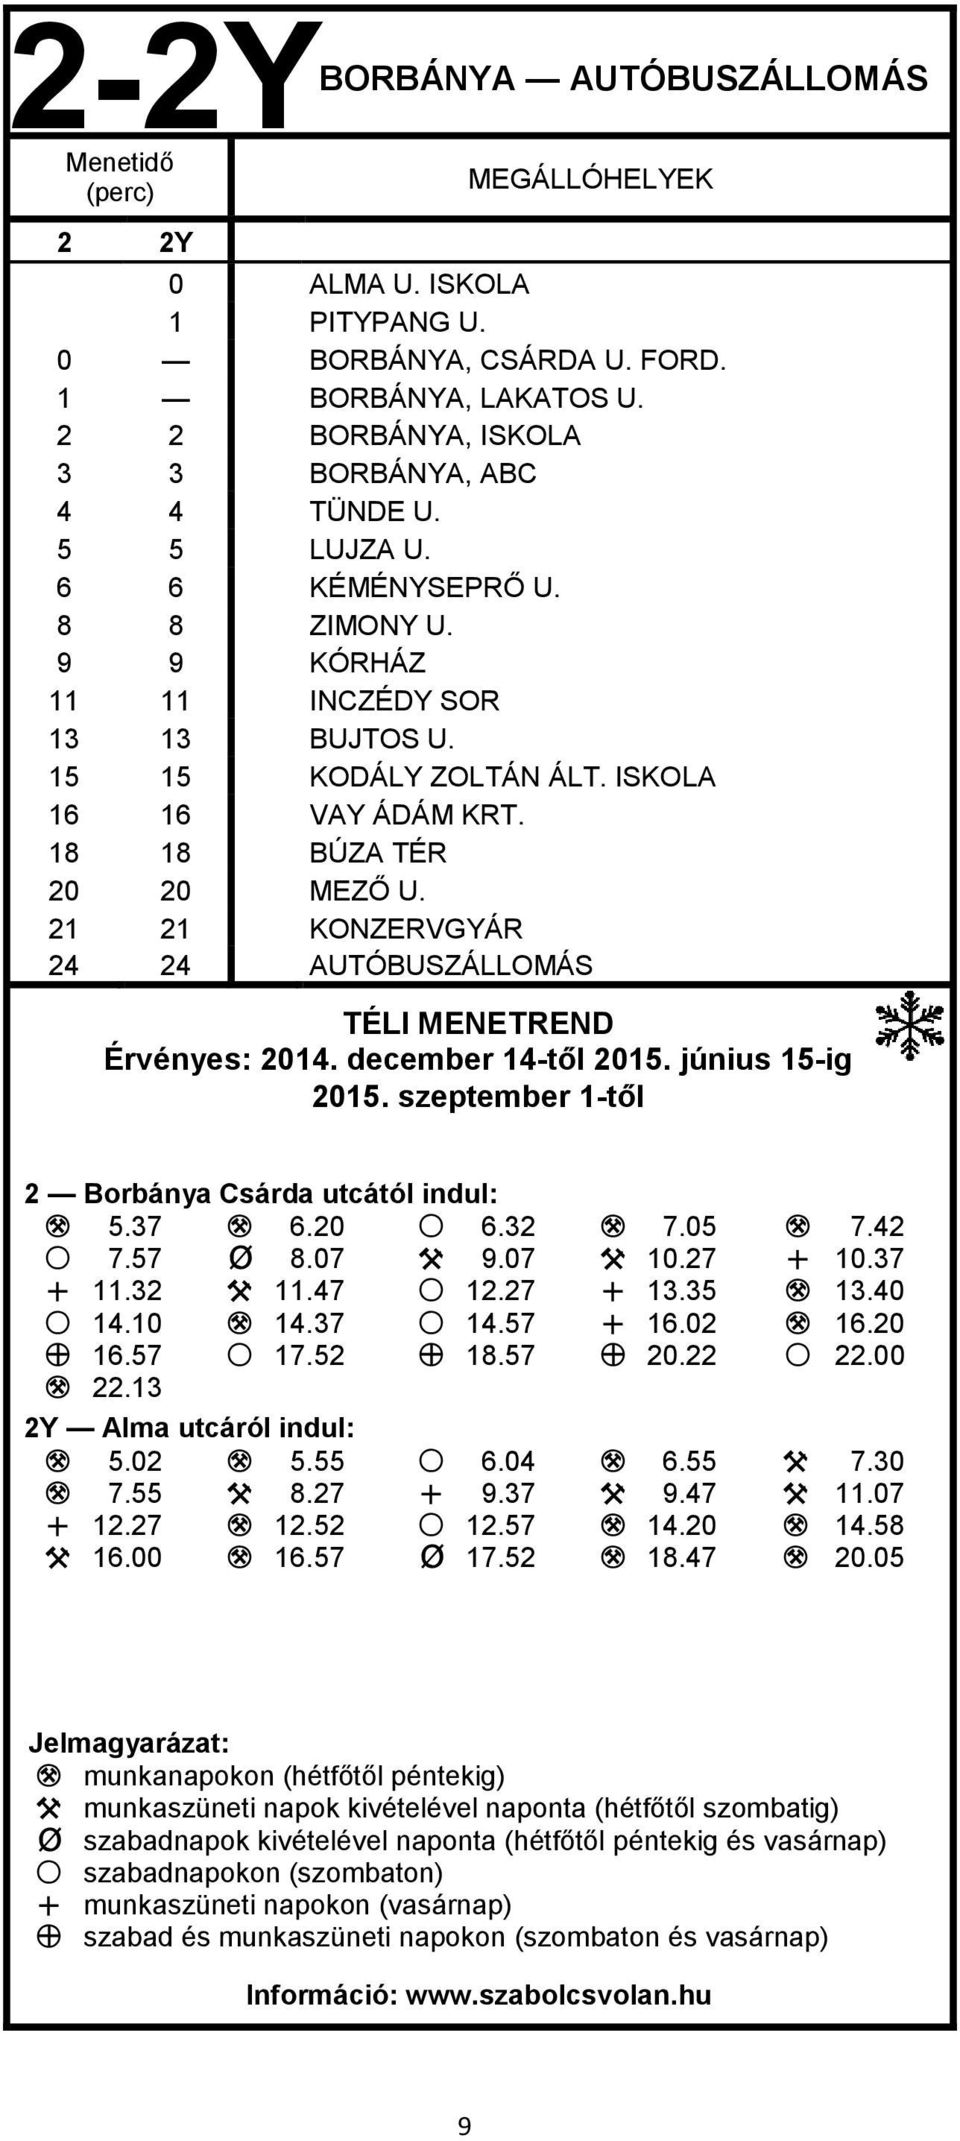 21 21 KONZERVGYÁR 24 24 AUTÓBUSZÁLLOMÁS TÉLI MENETREND Érvényes: 2014. december 14-től 2015. június 15-ig 2015. szeptember 1-től 2 Borbánya Csárda utcától indul: M 5.37 M 6.20 S 6.32 M 7.05 M 7.